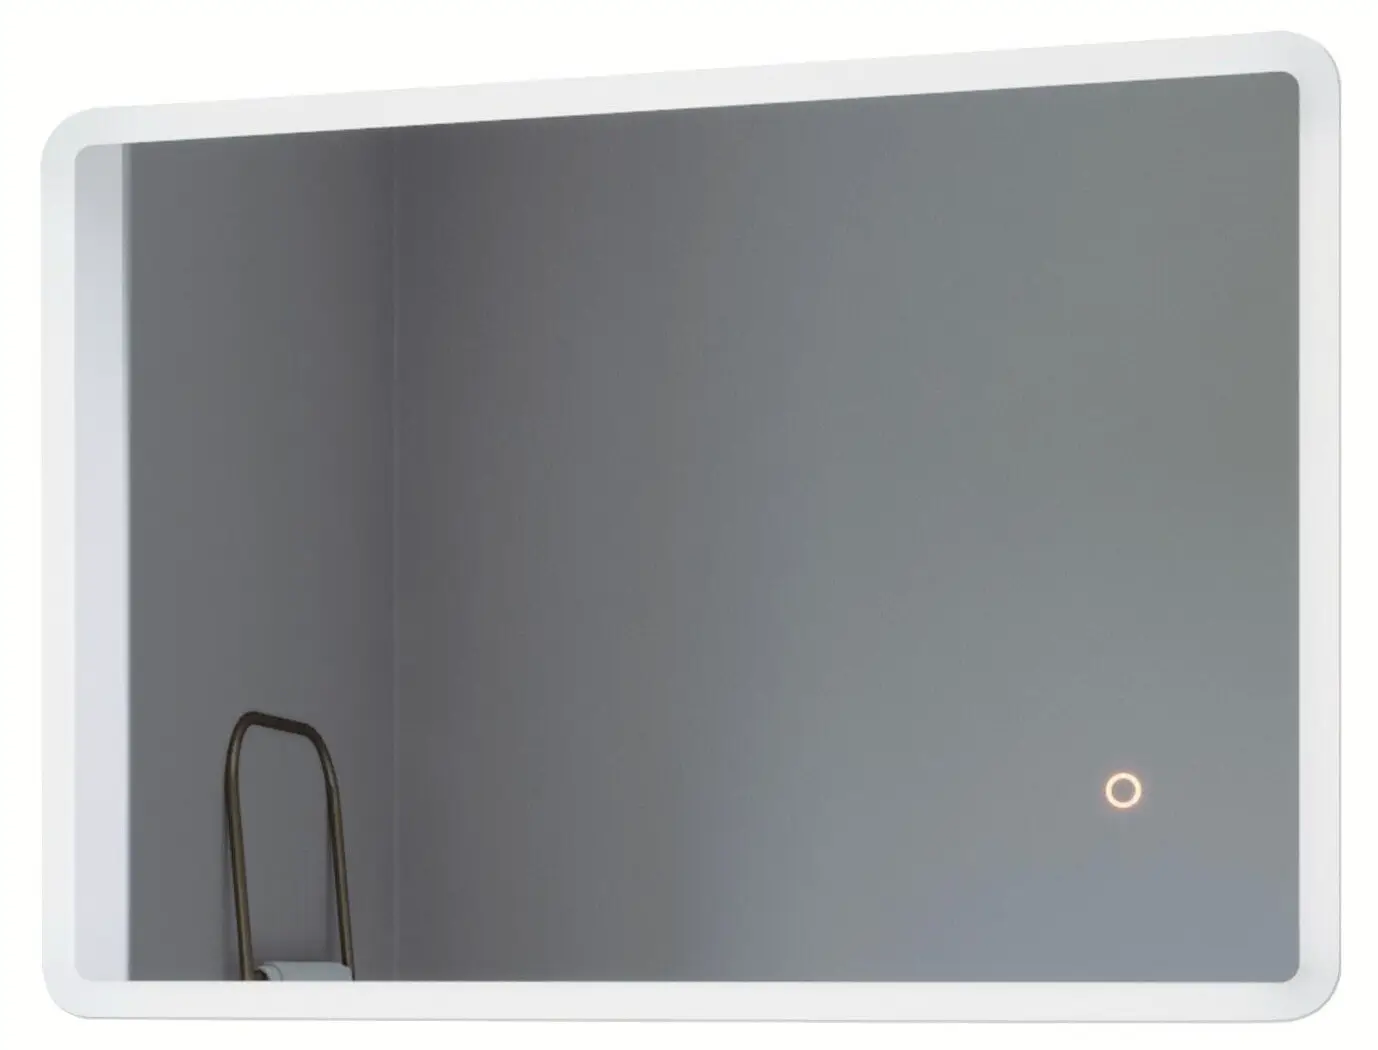 LED Badspiegel mit BORAS Beleuchtung